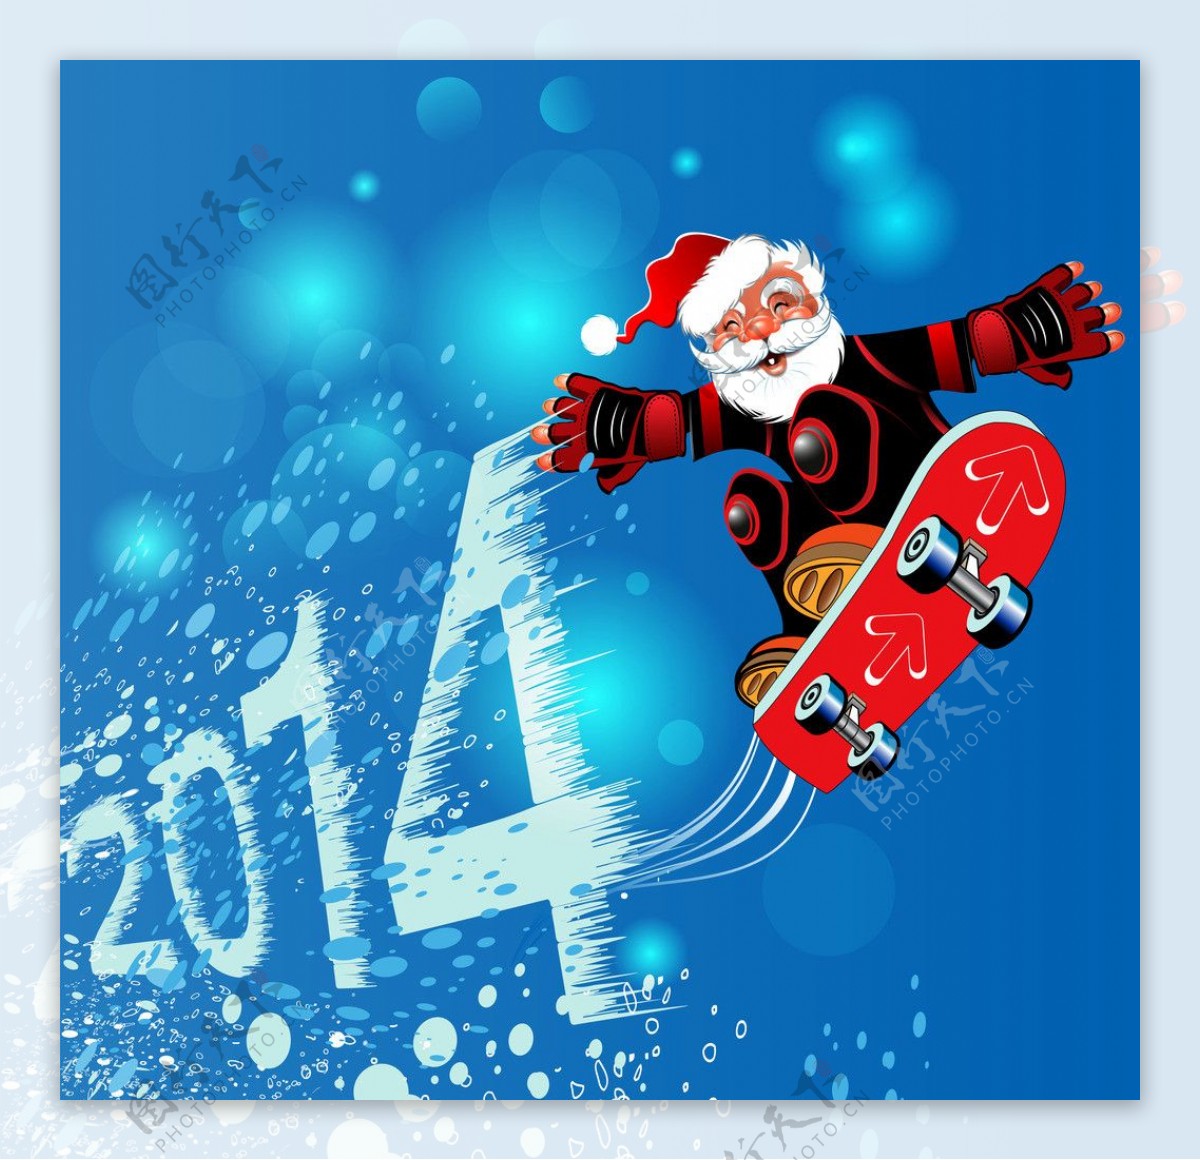 2014年圣诞节海报图片